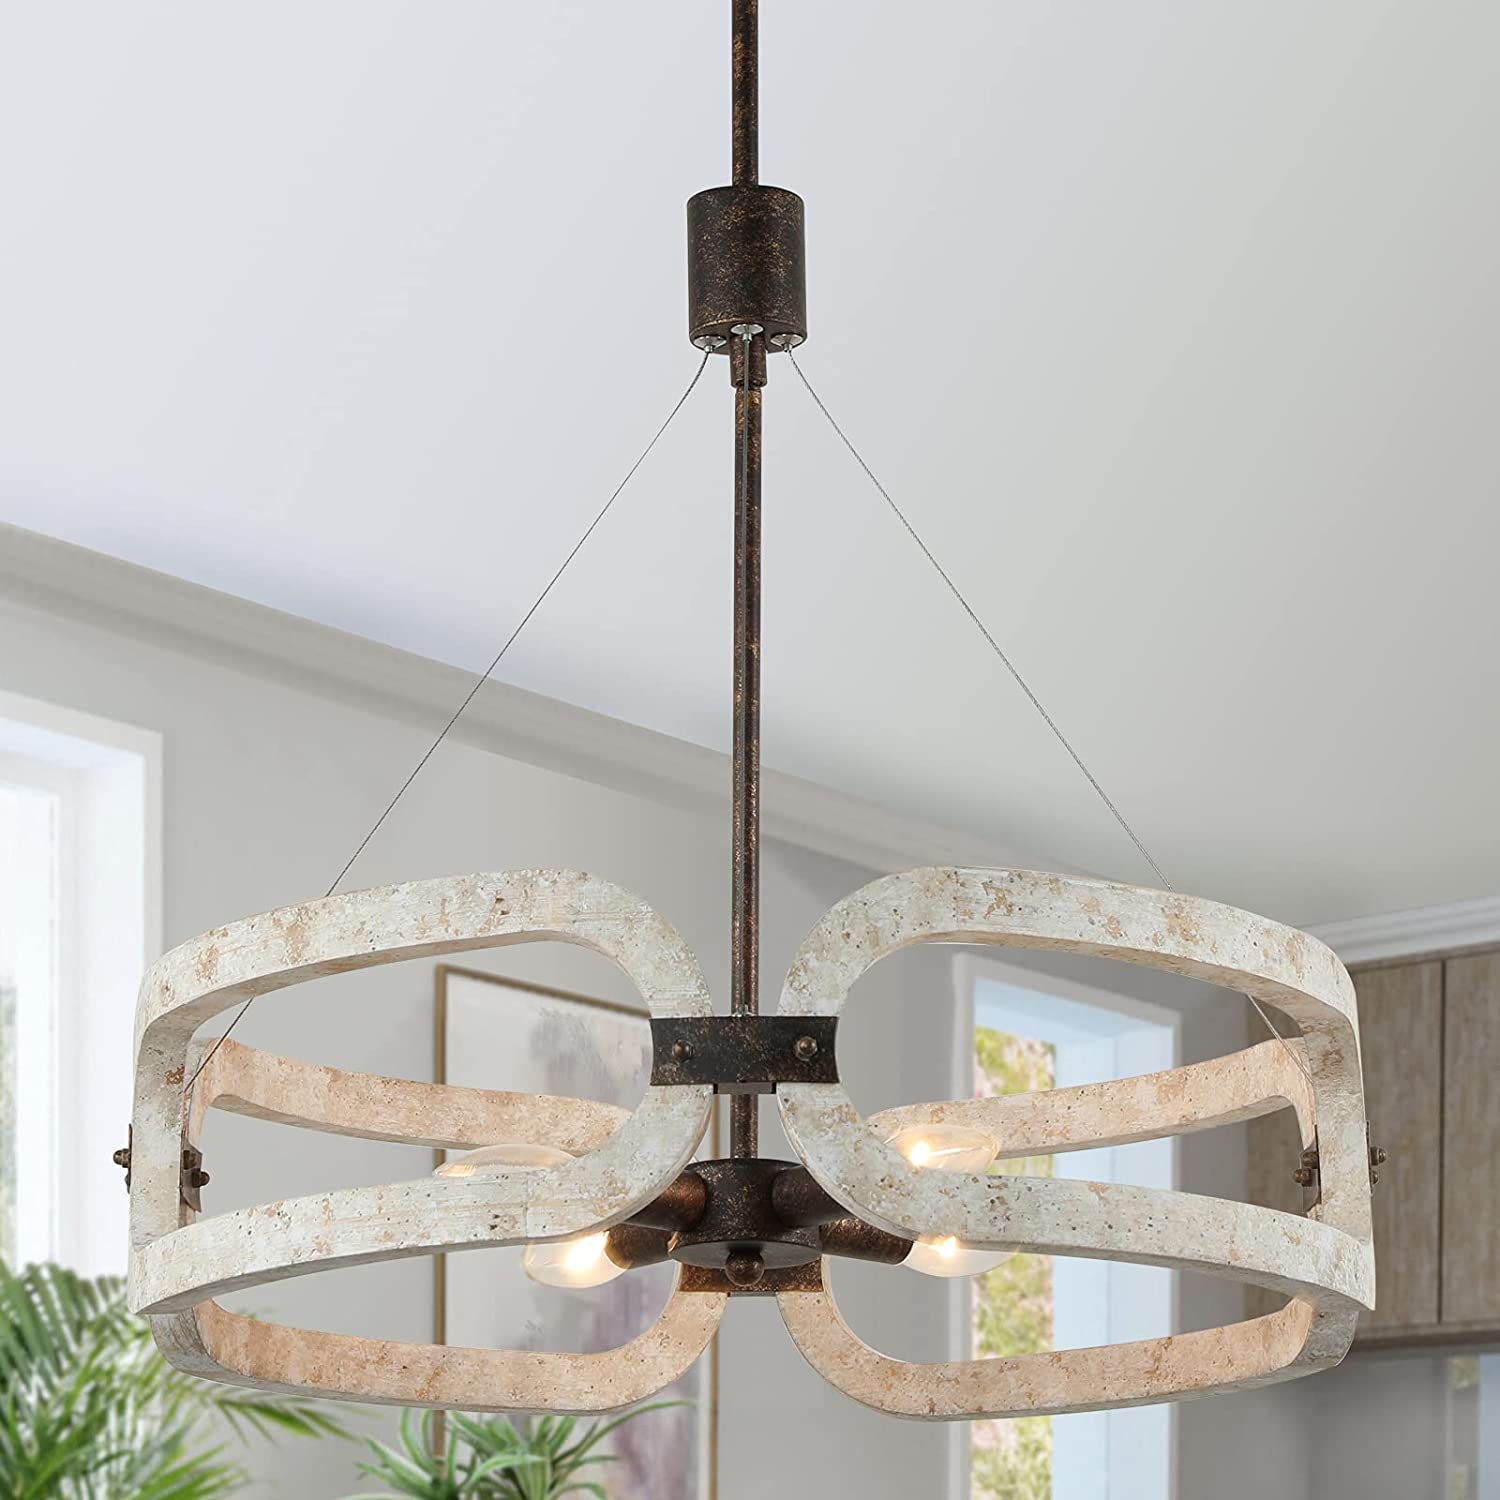 Drum wooden chandelier 4 light antique ceiling pendant light fixture